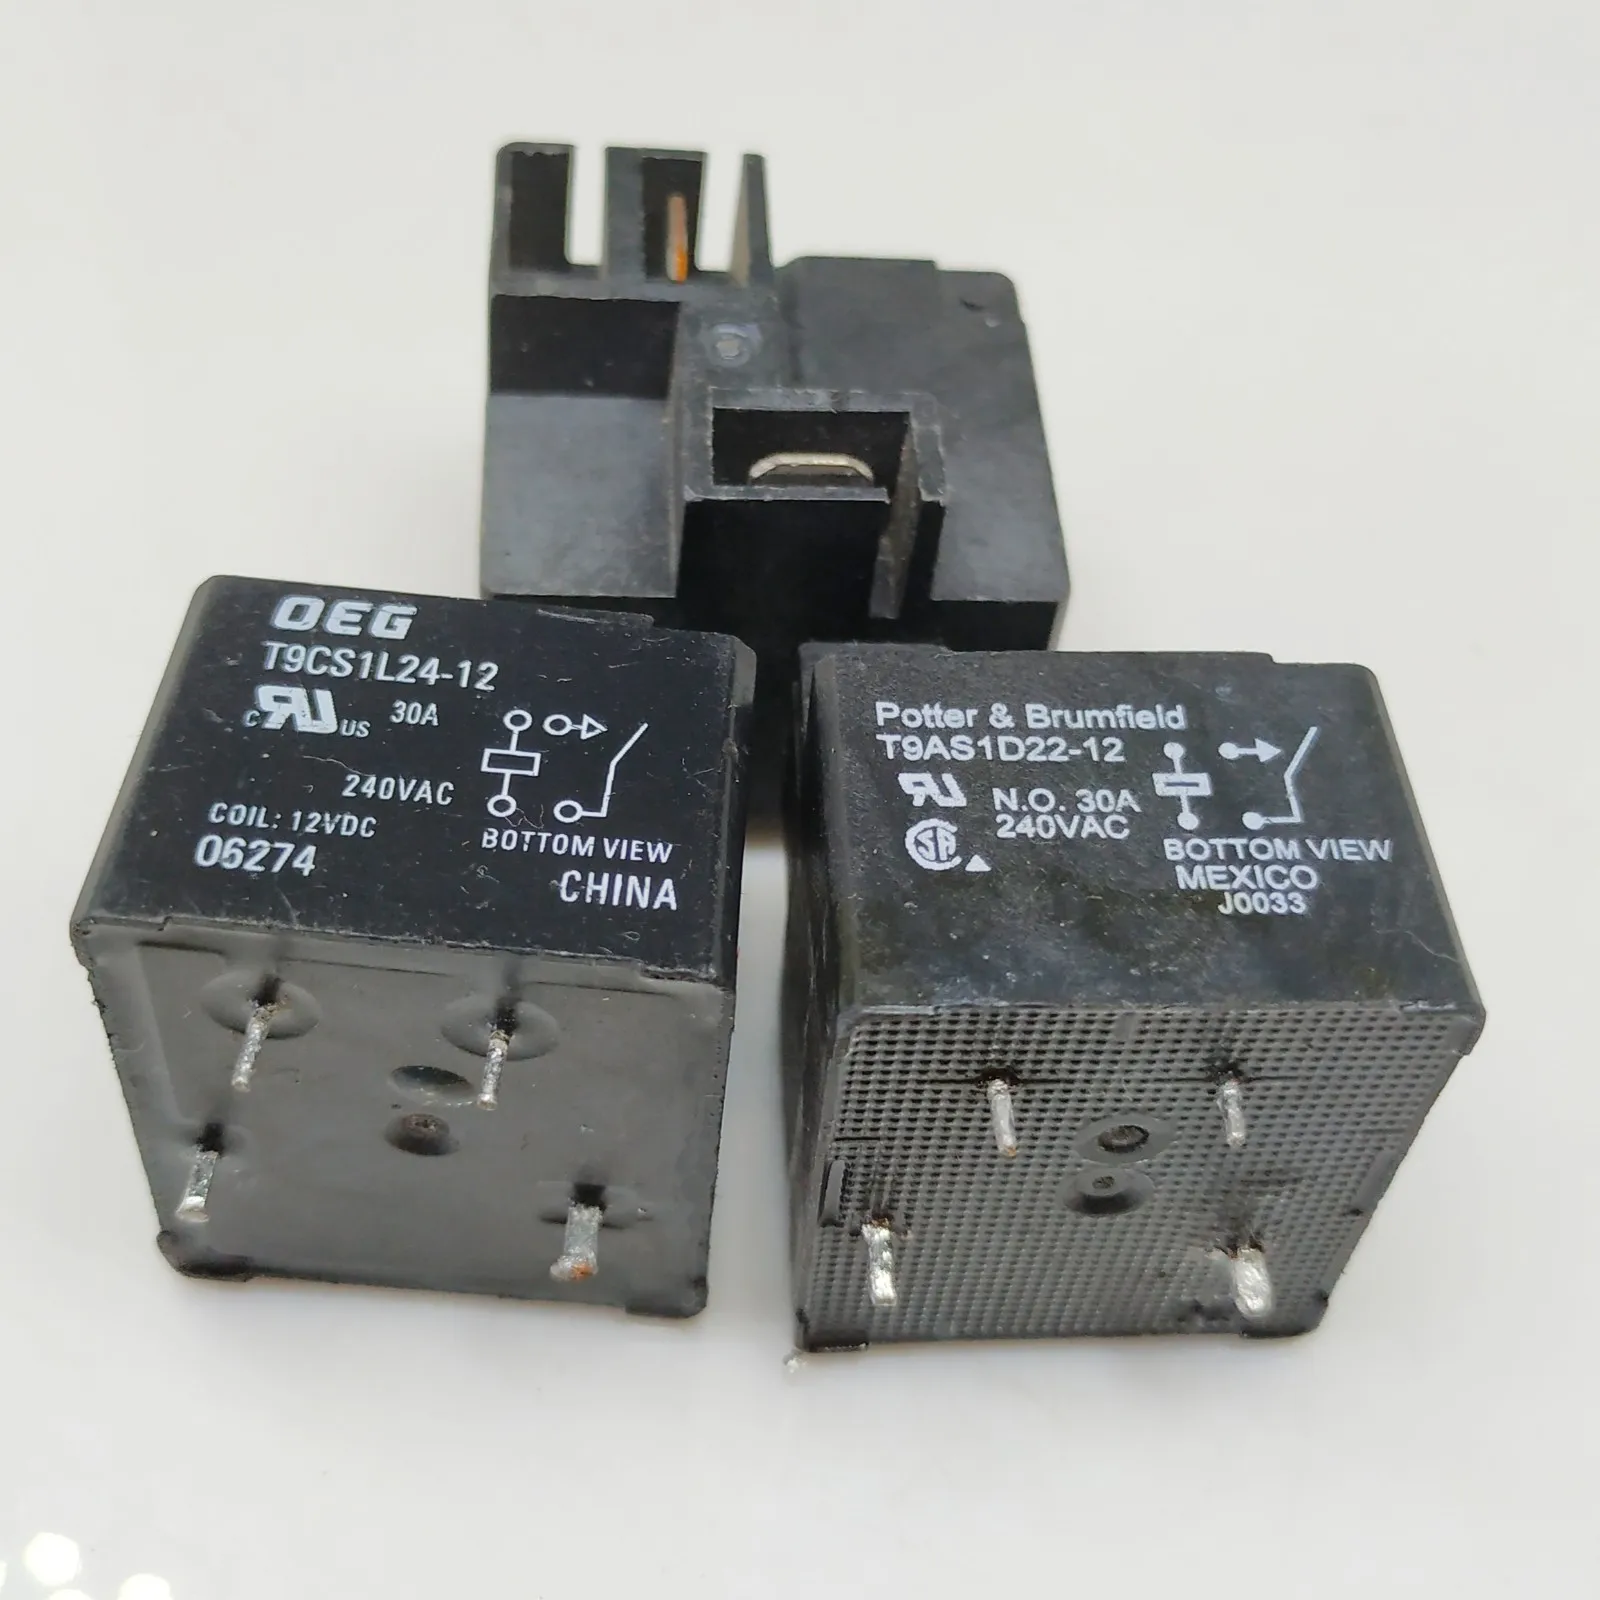 10Pcs T9AS1D22-24 24VDC 24V 30A 4-pin